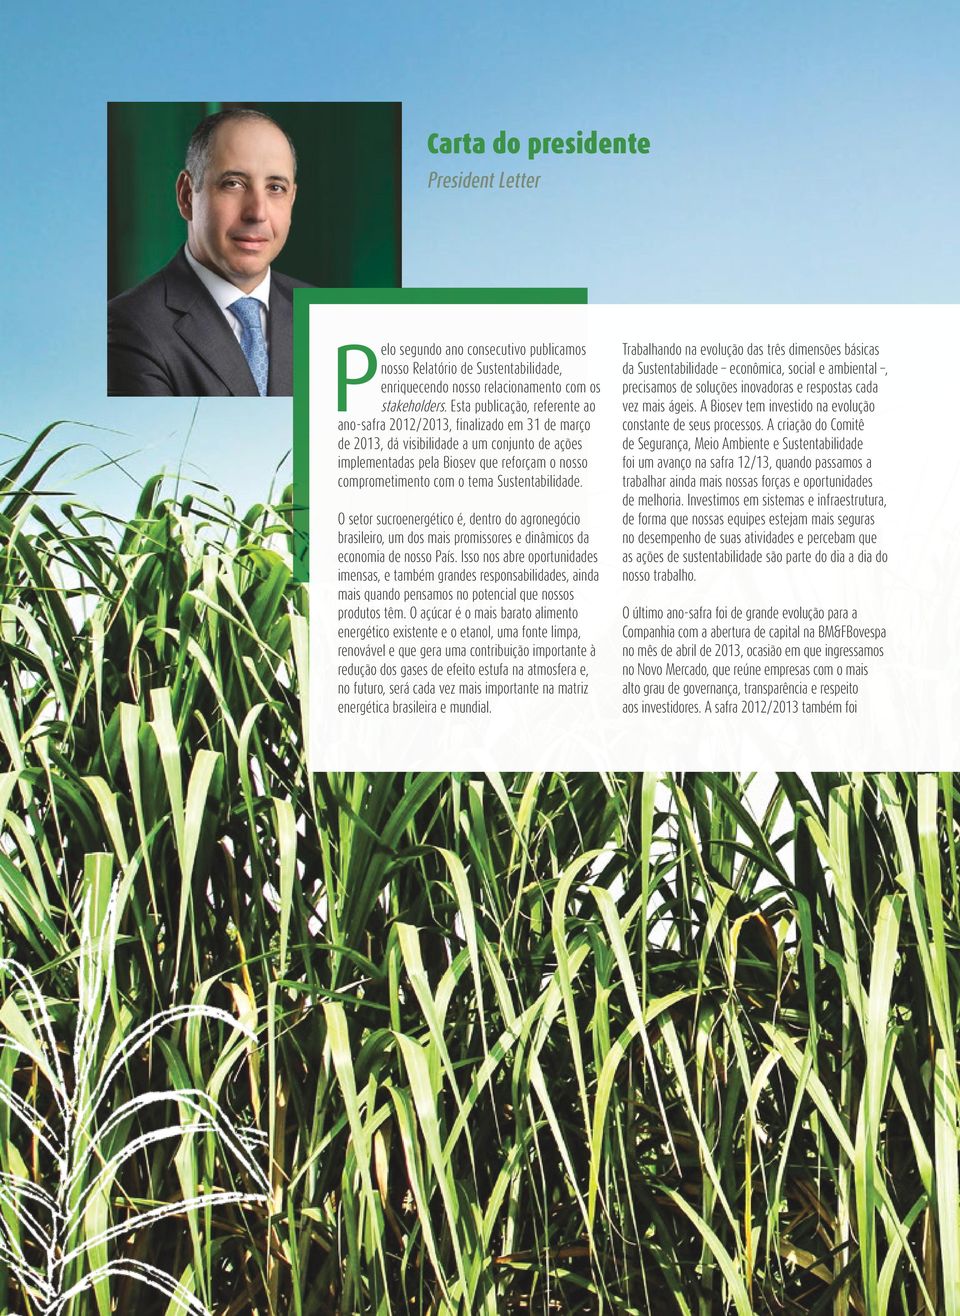 Sustentabilidade. O setor sucroenergético é, dentro do agronegócio brasileiro, um dos mais promissores e dinâmicos da economia de nosso País.